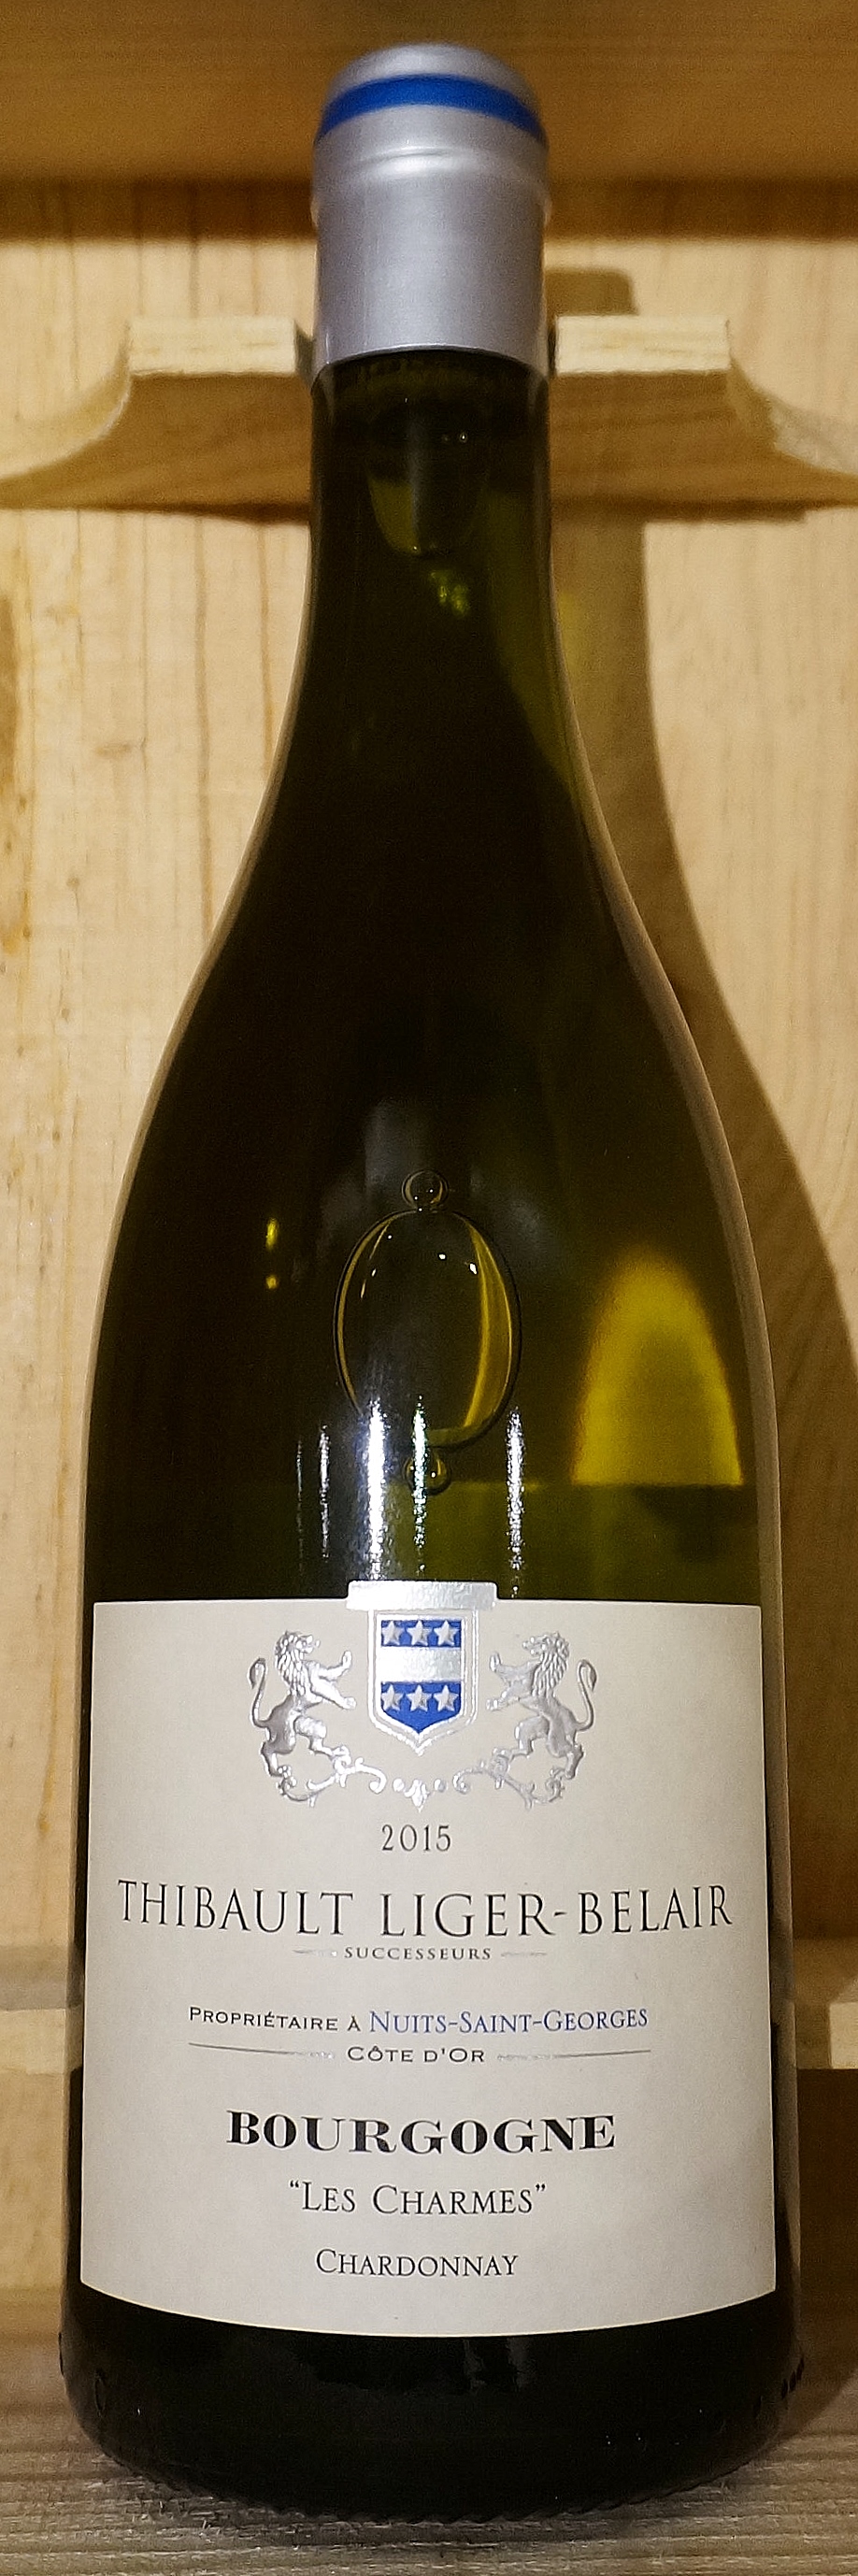 注目ブランド Charmes Les Chardonnay Bourgogne ティボー・リジェ・ベレール Liger-Belair Thibault [2015]750ml シャルム[2015]750ml レ シャルドネ ブルゴーニュ 白ワイン